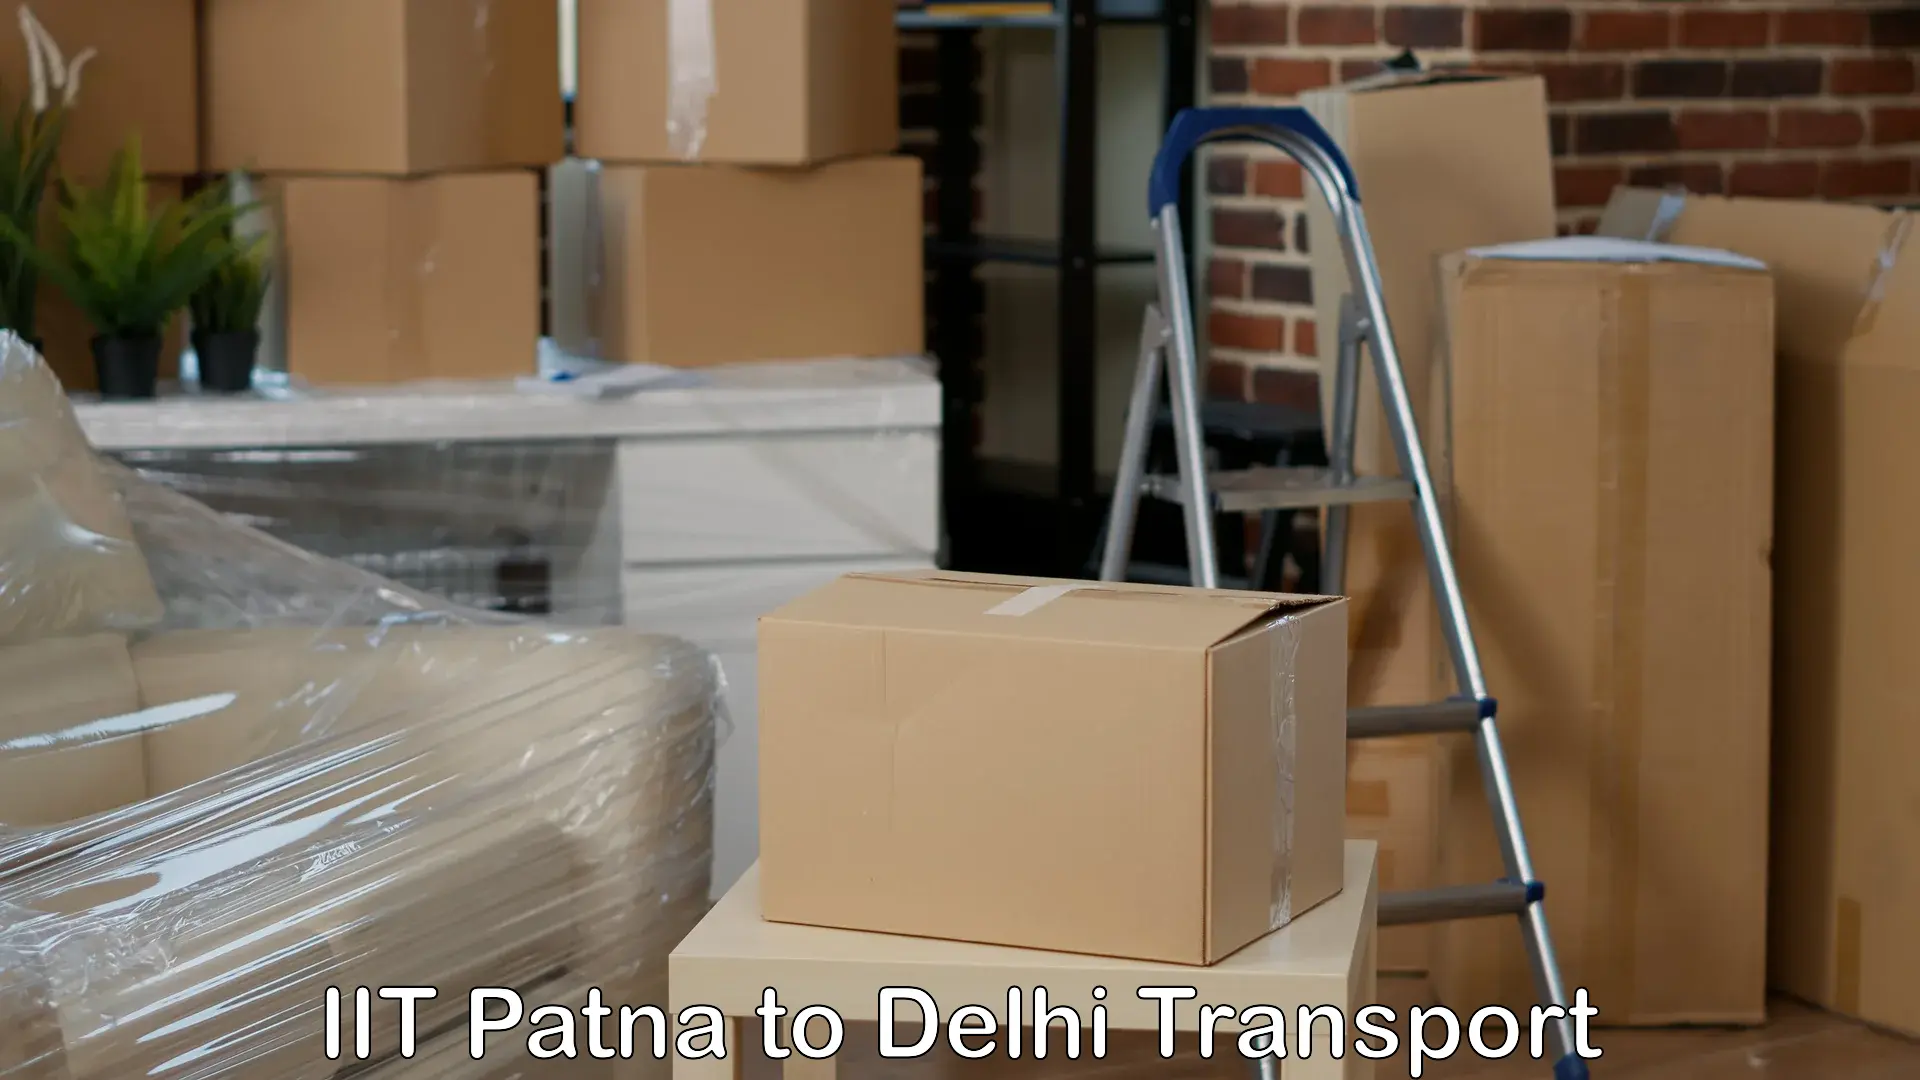 Door to door transport services IIT Patna to Lodhi Road